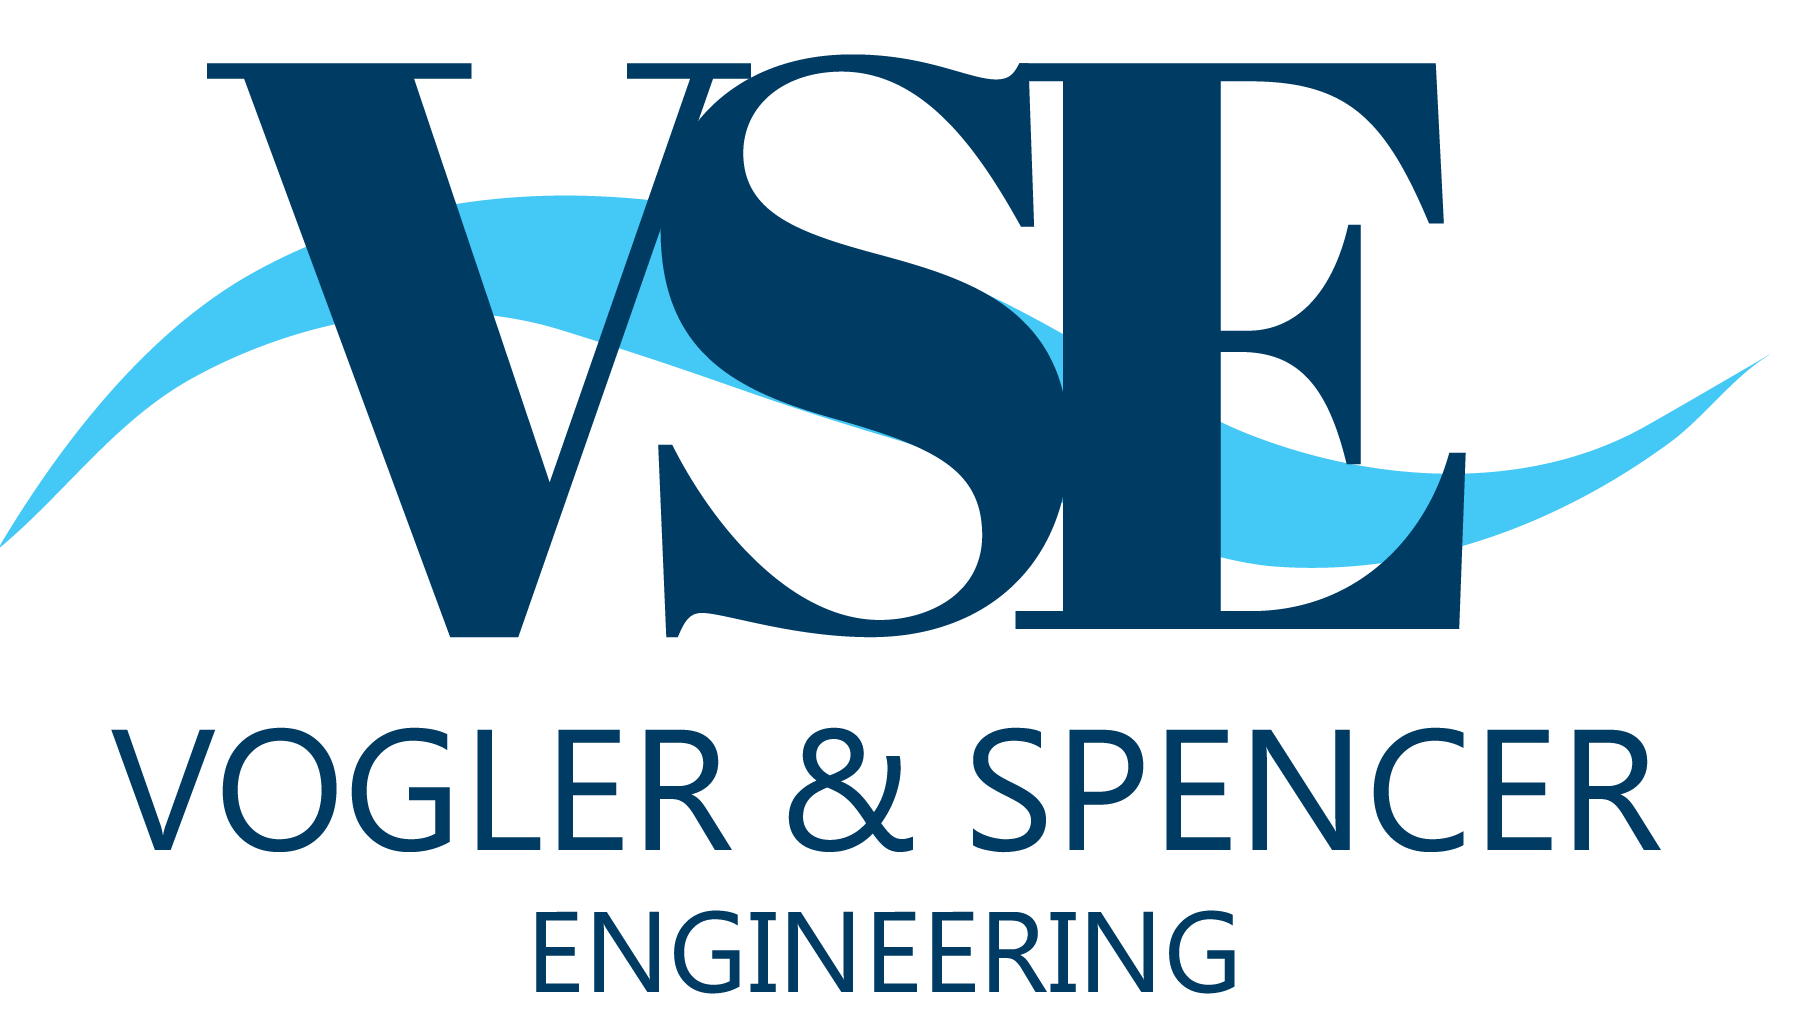 Vogler & Spencer Engineering, Inc. logo